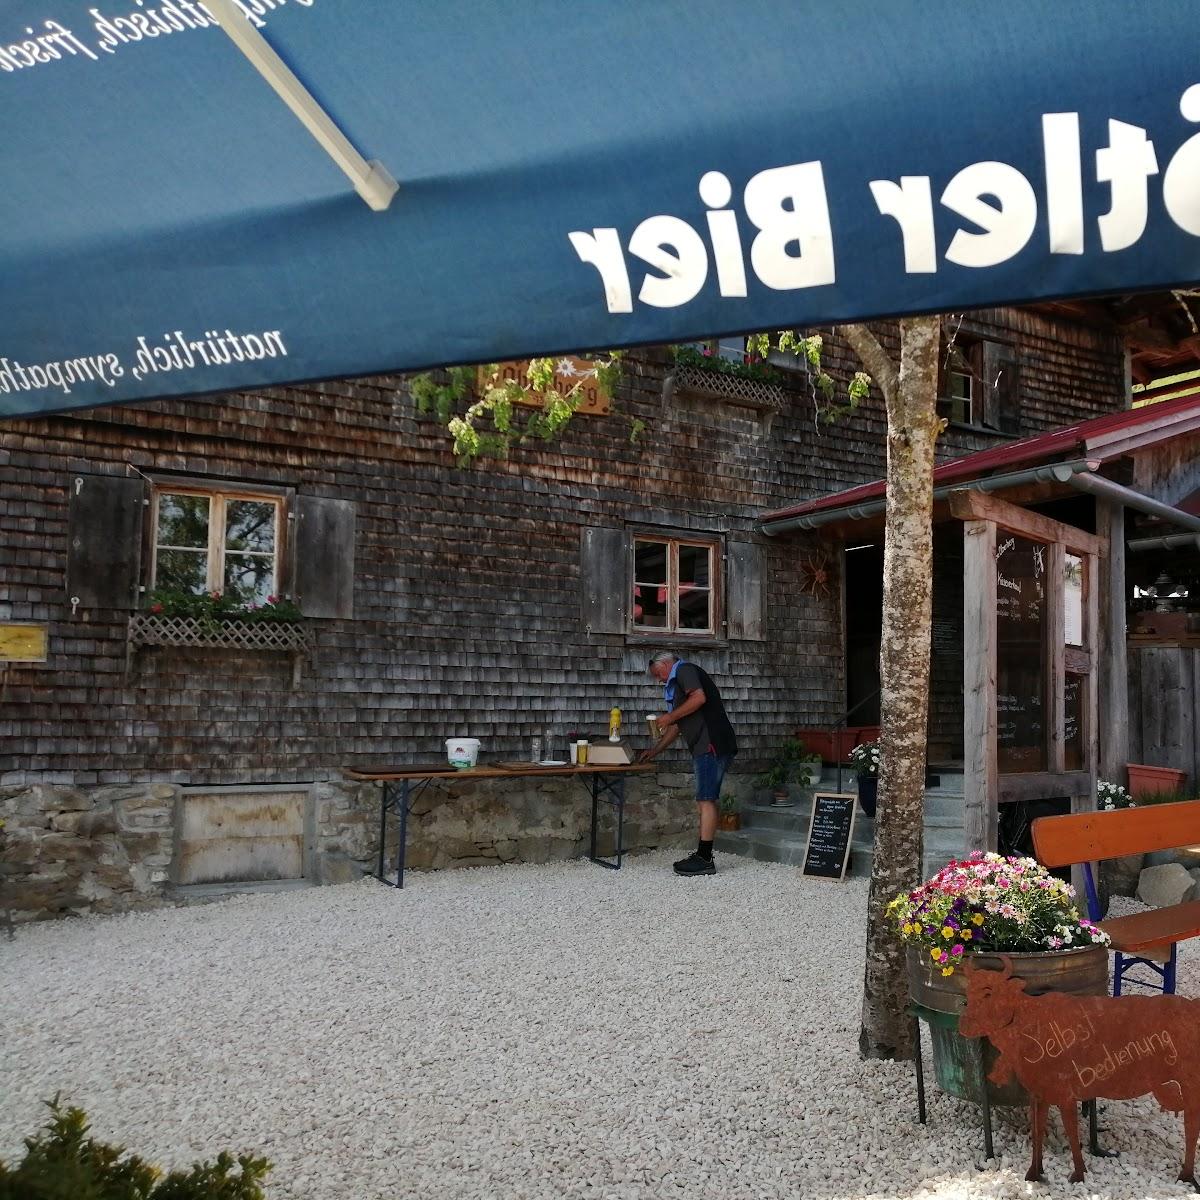 Restaurant "Alpe Oberberg Immenstadt" in Blaichach